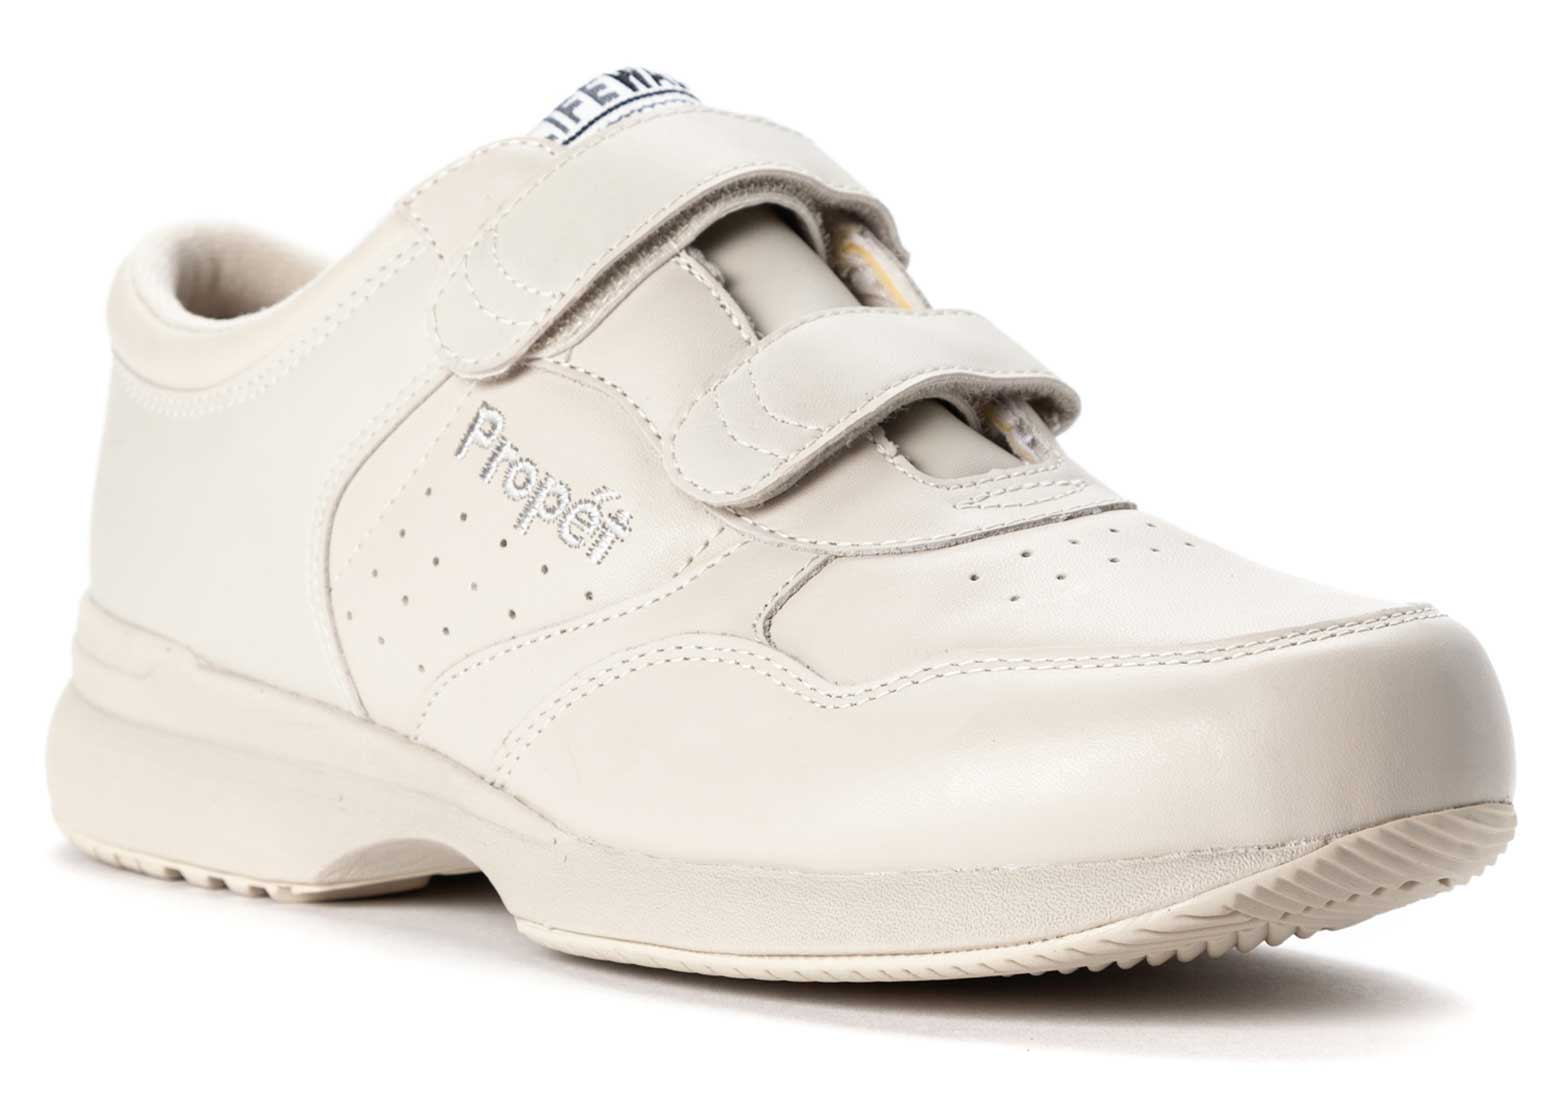 All Colors Propet PedWalker 25 A5500 Men's Diabetic Extra-depth Strap Shoes